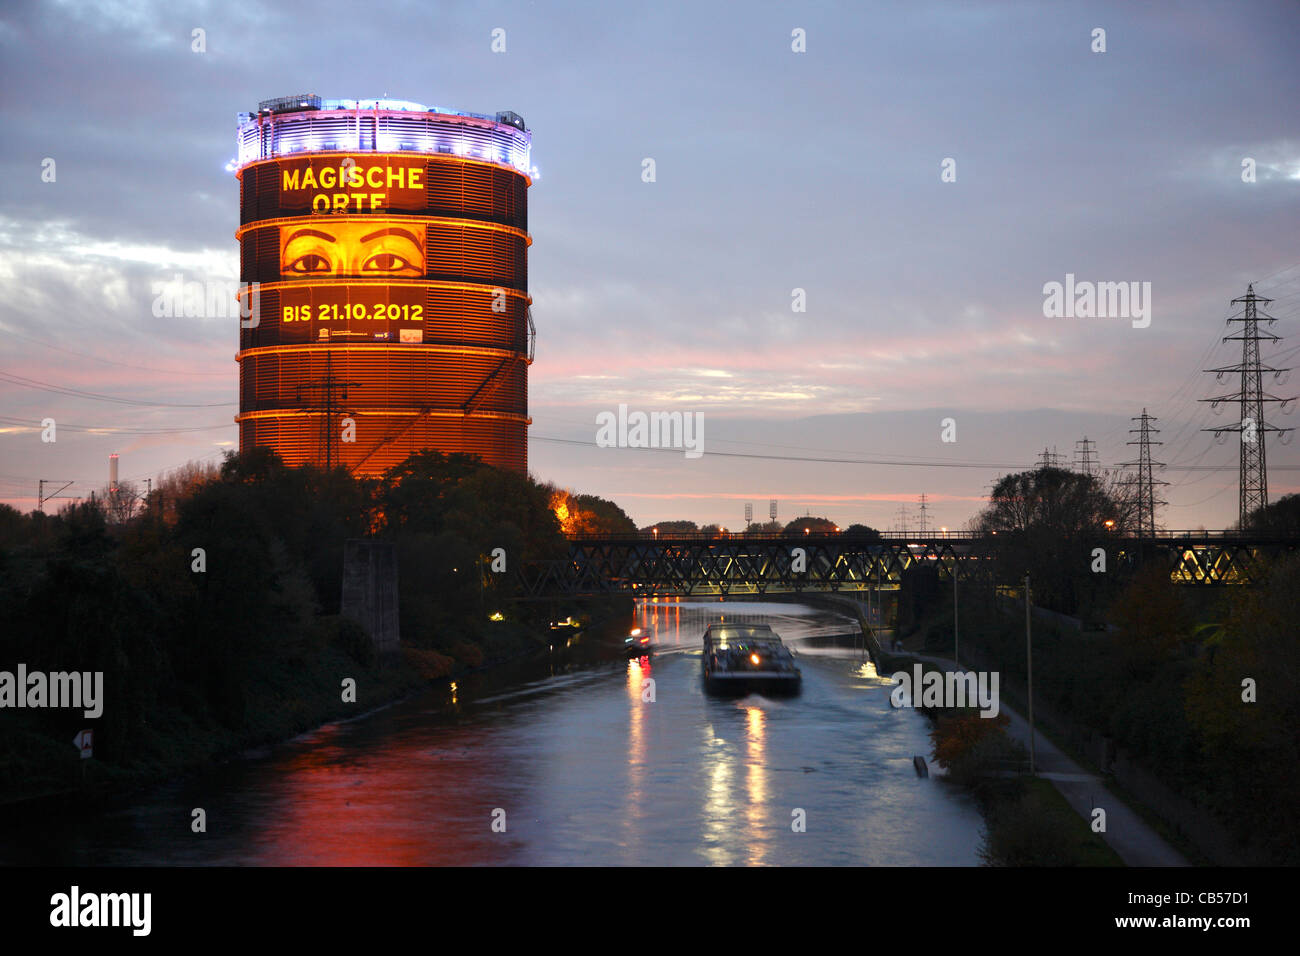 Rhein-Herne-Kanal, Binnenschiffahrt. Gasometer, ein großer Gasspeicher, heute eine Ausstellung und kulturelle Event-Location. Stockfoto